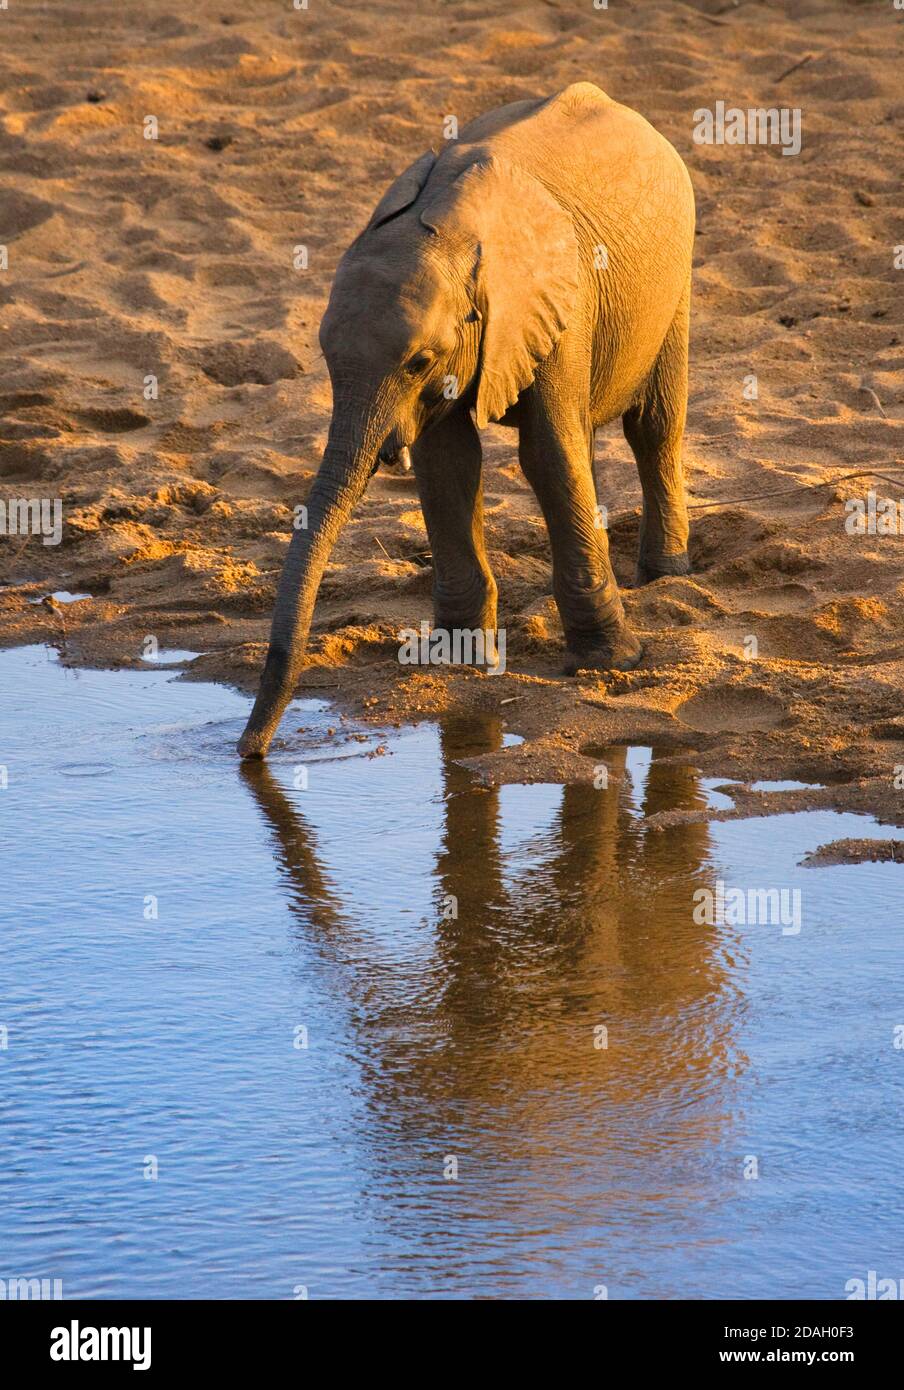 Bébé éléphant au bord de la rivière, Parc national Kruger, Afrique du Sud Banque D'Images